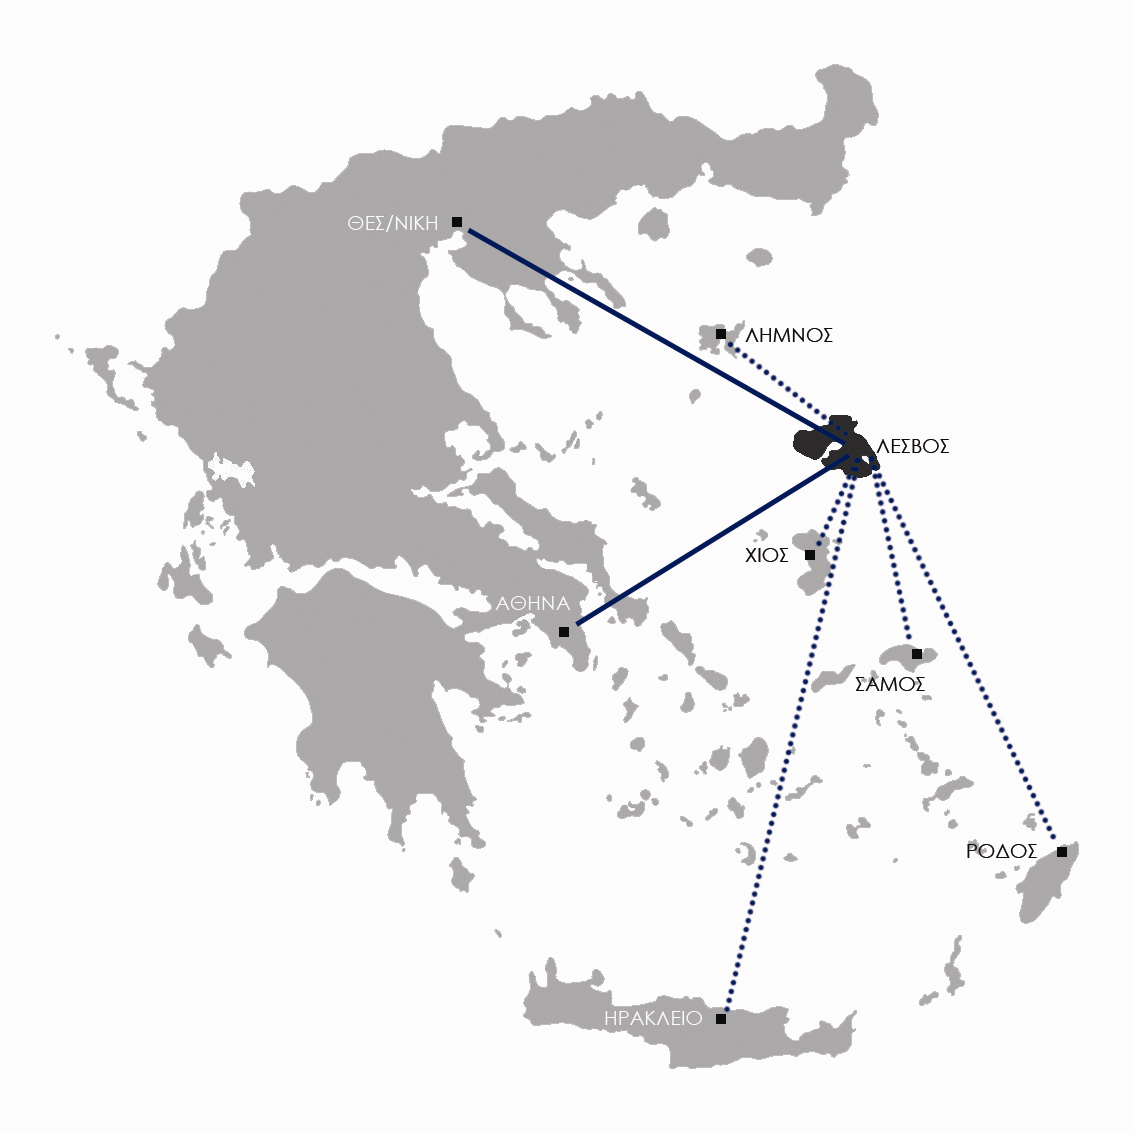 Ε Ι Σ Α Γ Ω Γ Η Η Λέσβος είναι το τρίτο μεγαλύτερο σε έκταση νησί της Ελλάδας και βρίσκεται στο βορειοανατολικό Αιγαίο, πολύ κοντά στα μικρασιατικά παράλια.